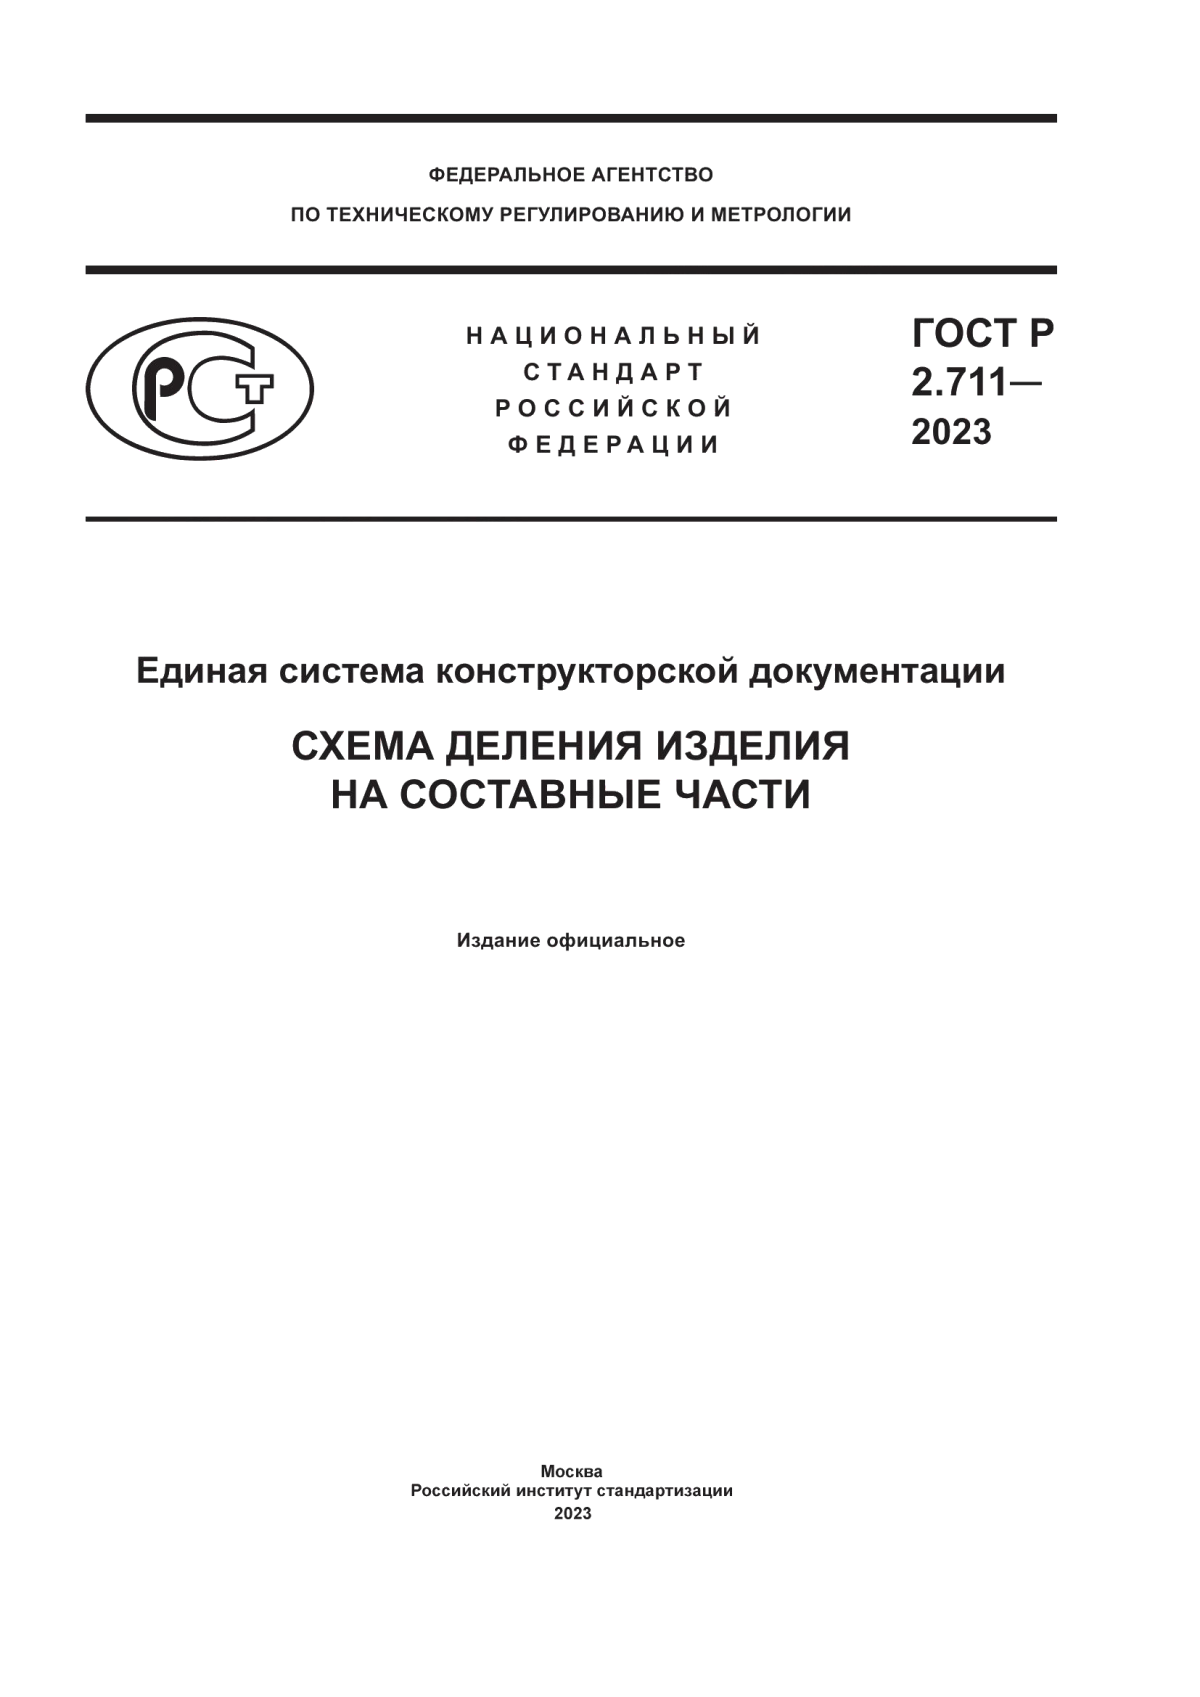 ГОСТ Р 2.711-2023 Единая система конструкторской документации. Схема деления изделия на составные части